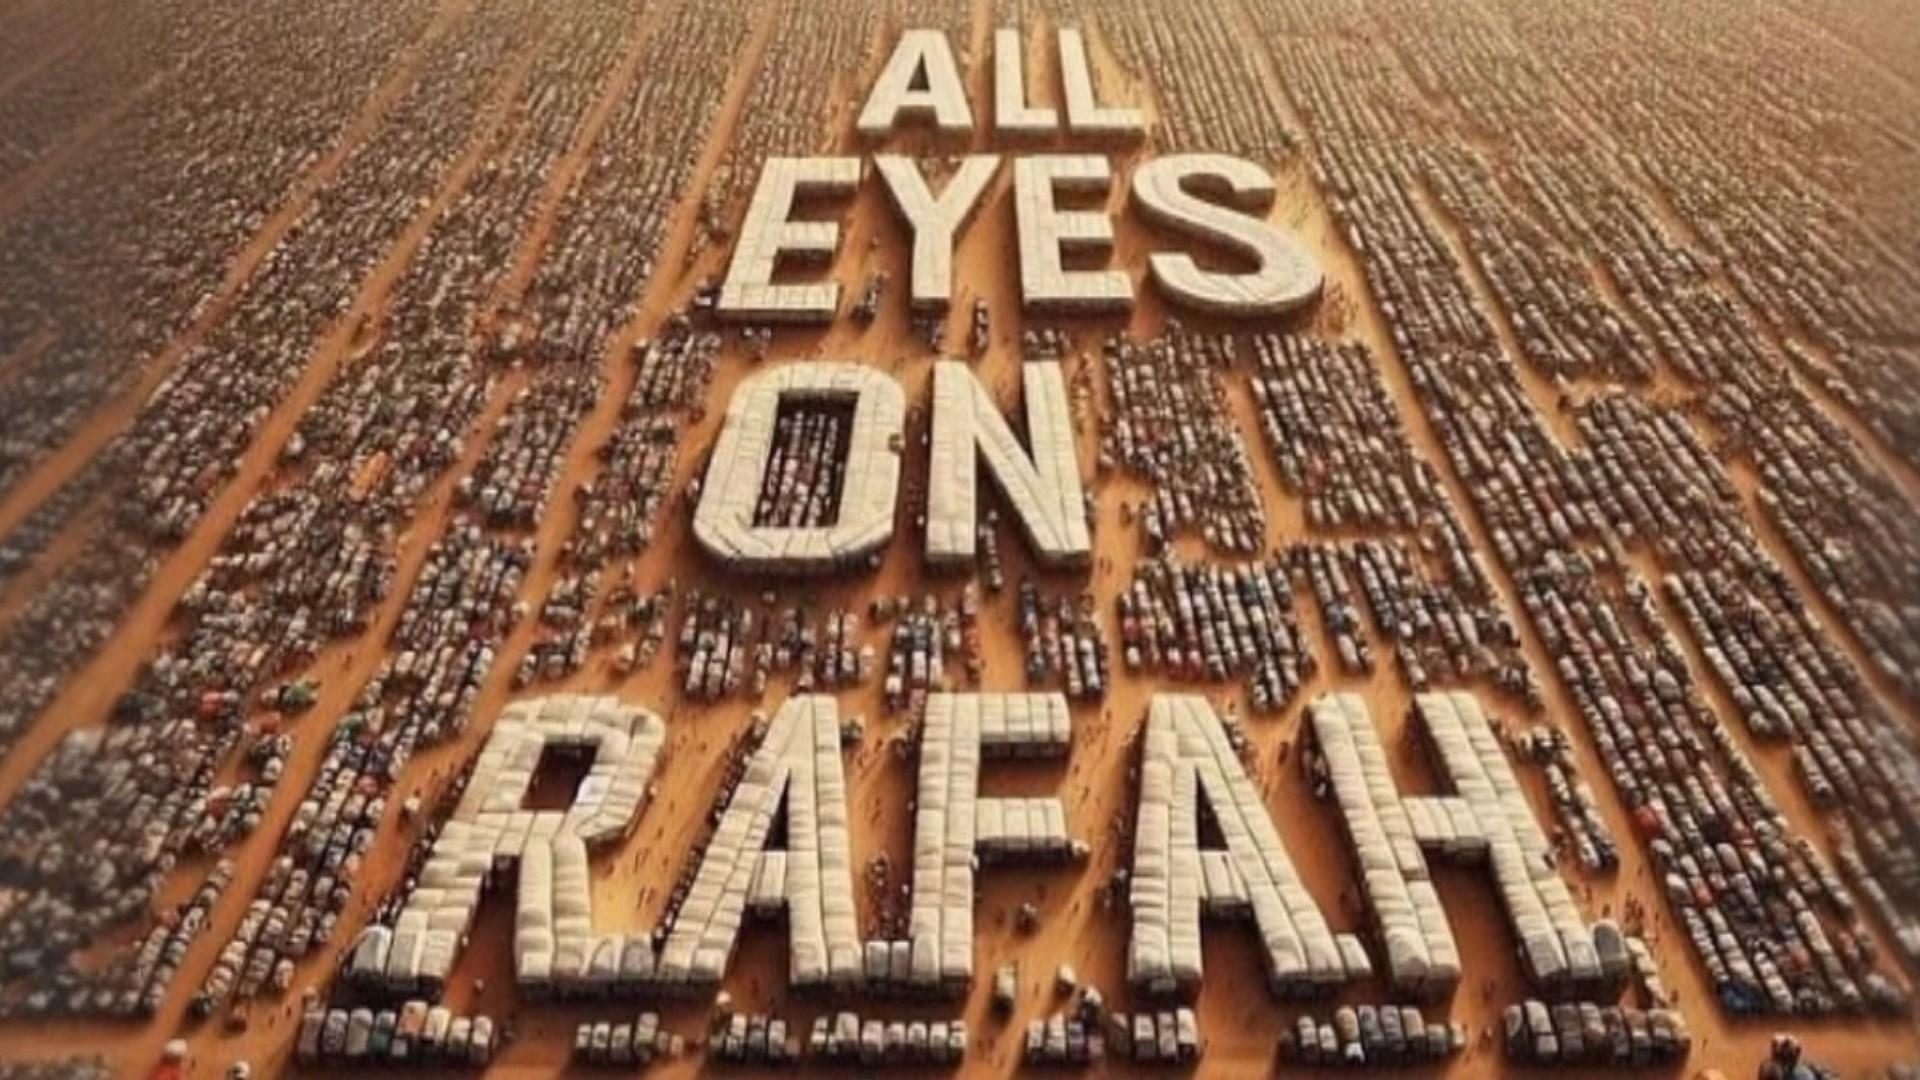 L'image montre des milliers de tentes alignées à perte de vue devant des montagnes, avec au centre le slogan: "All eyes on Rafah" ("Tous les yeux sont tournés vers Rafah").